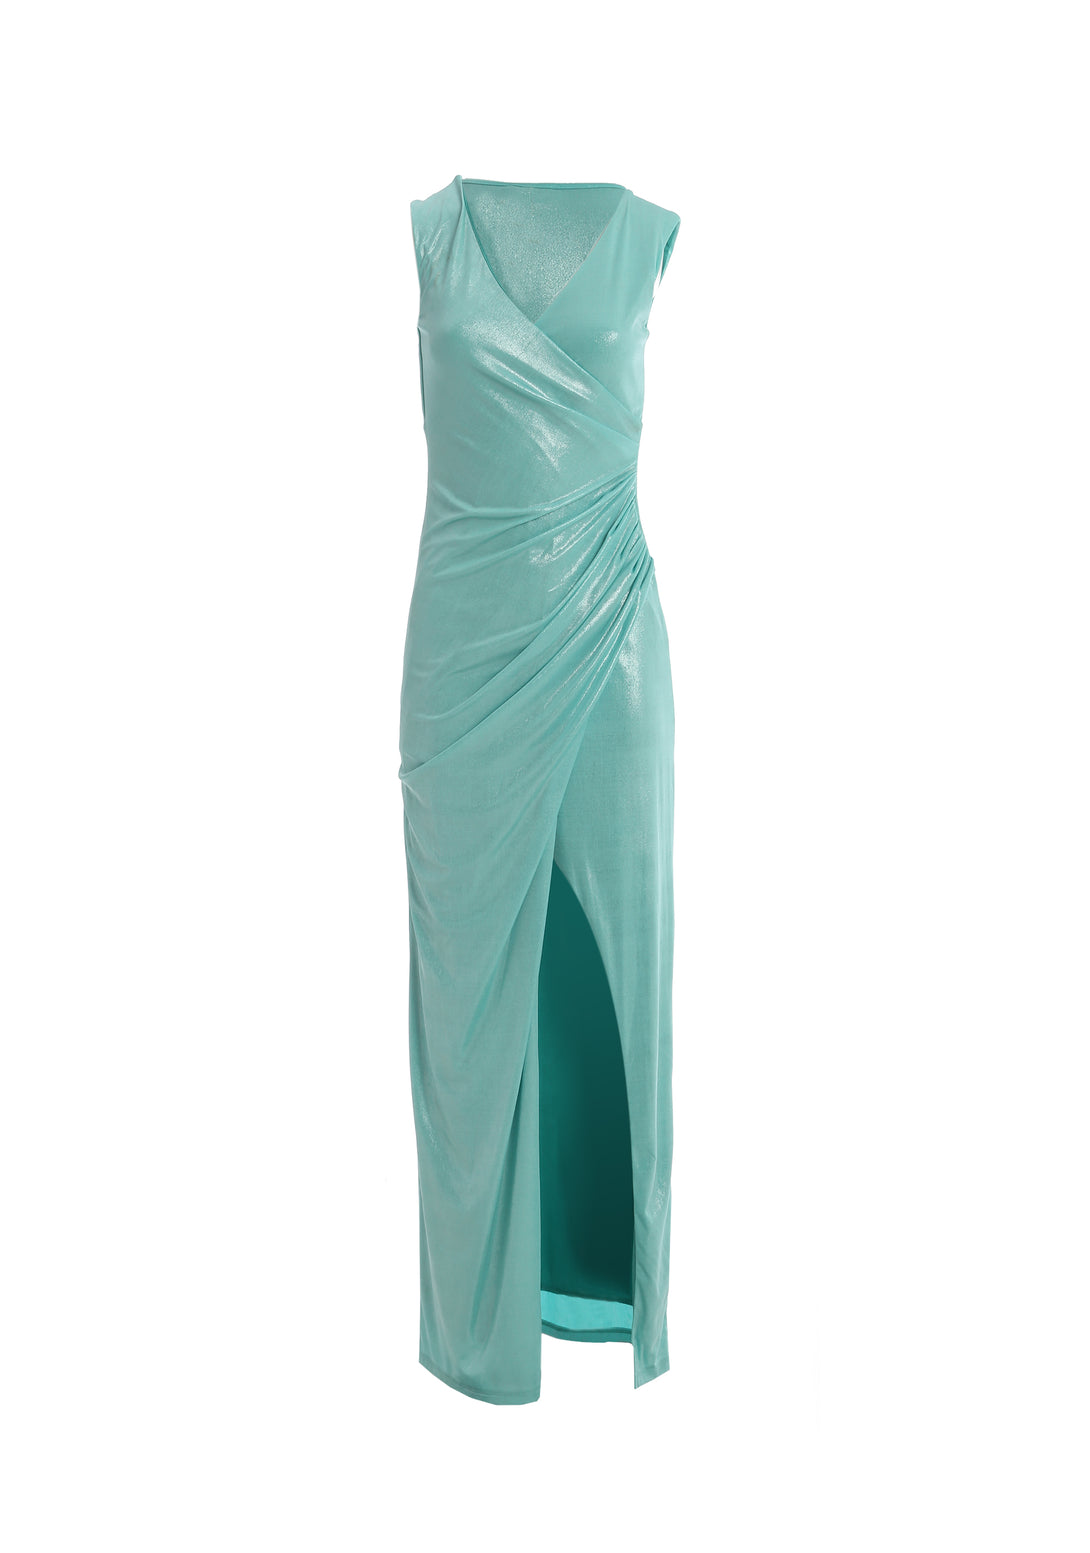 Long sleeveless dress made in shiny fabric